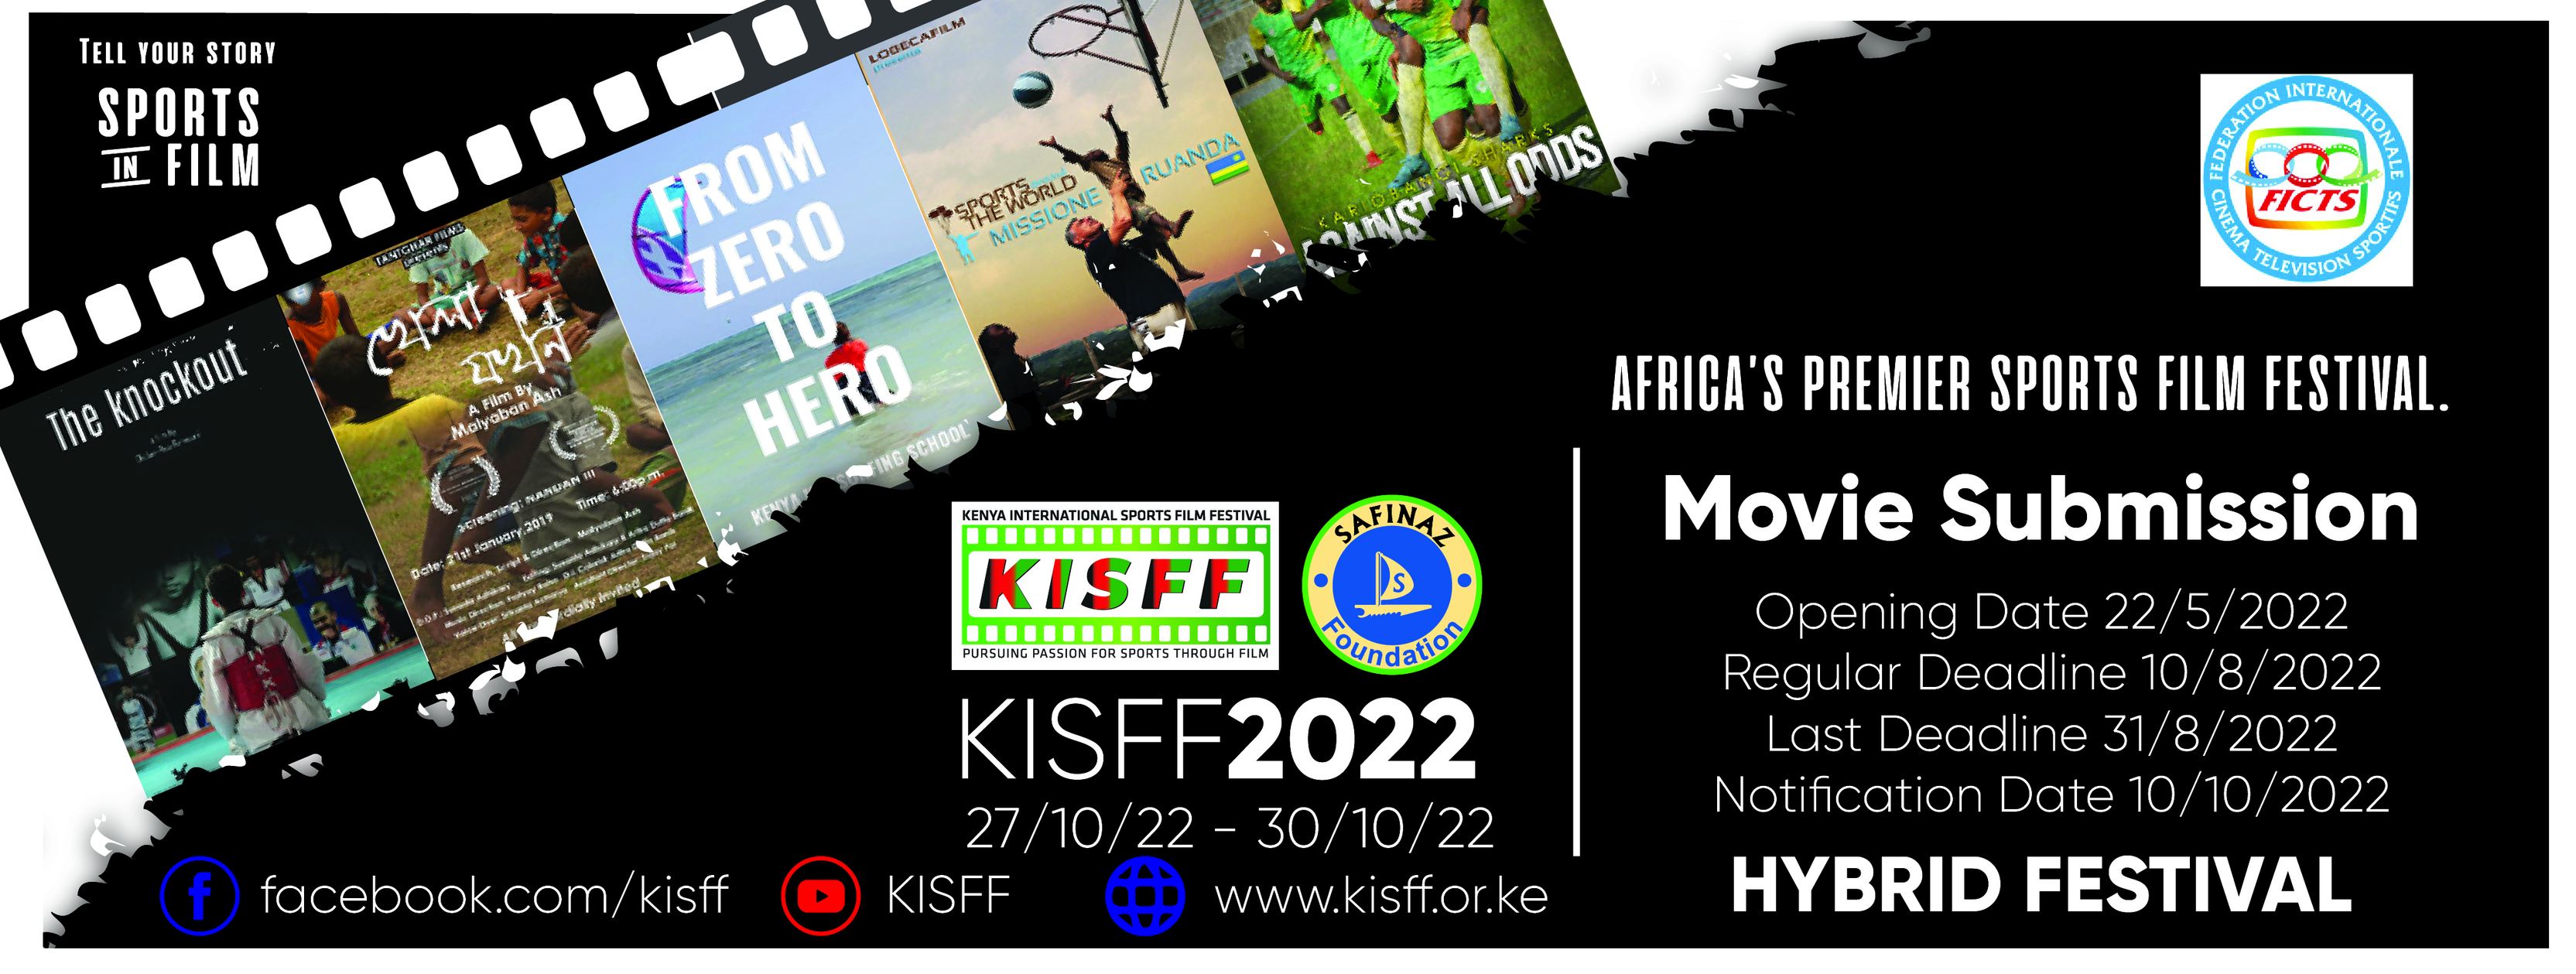 KENYA INTERNATIONAL SPORTS FILM FESTIVAL